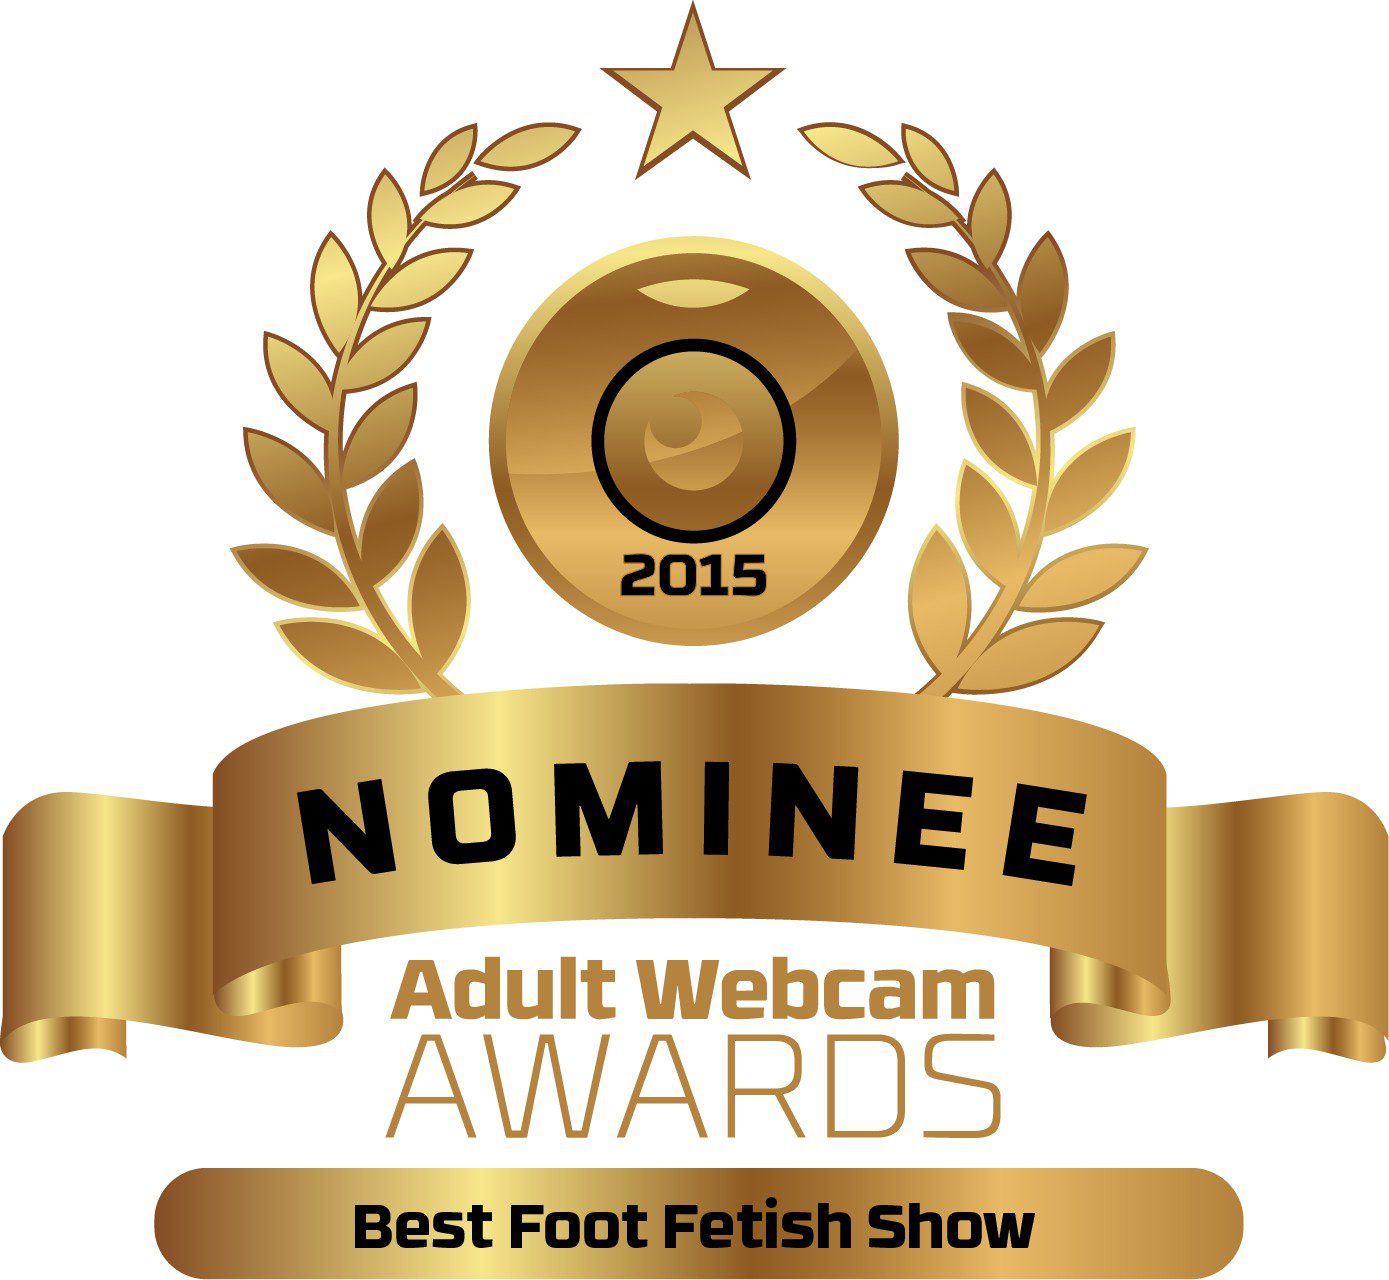 Best foot fetish show nominee